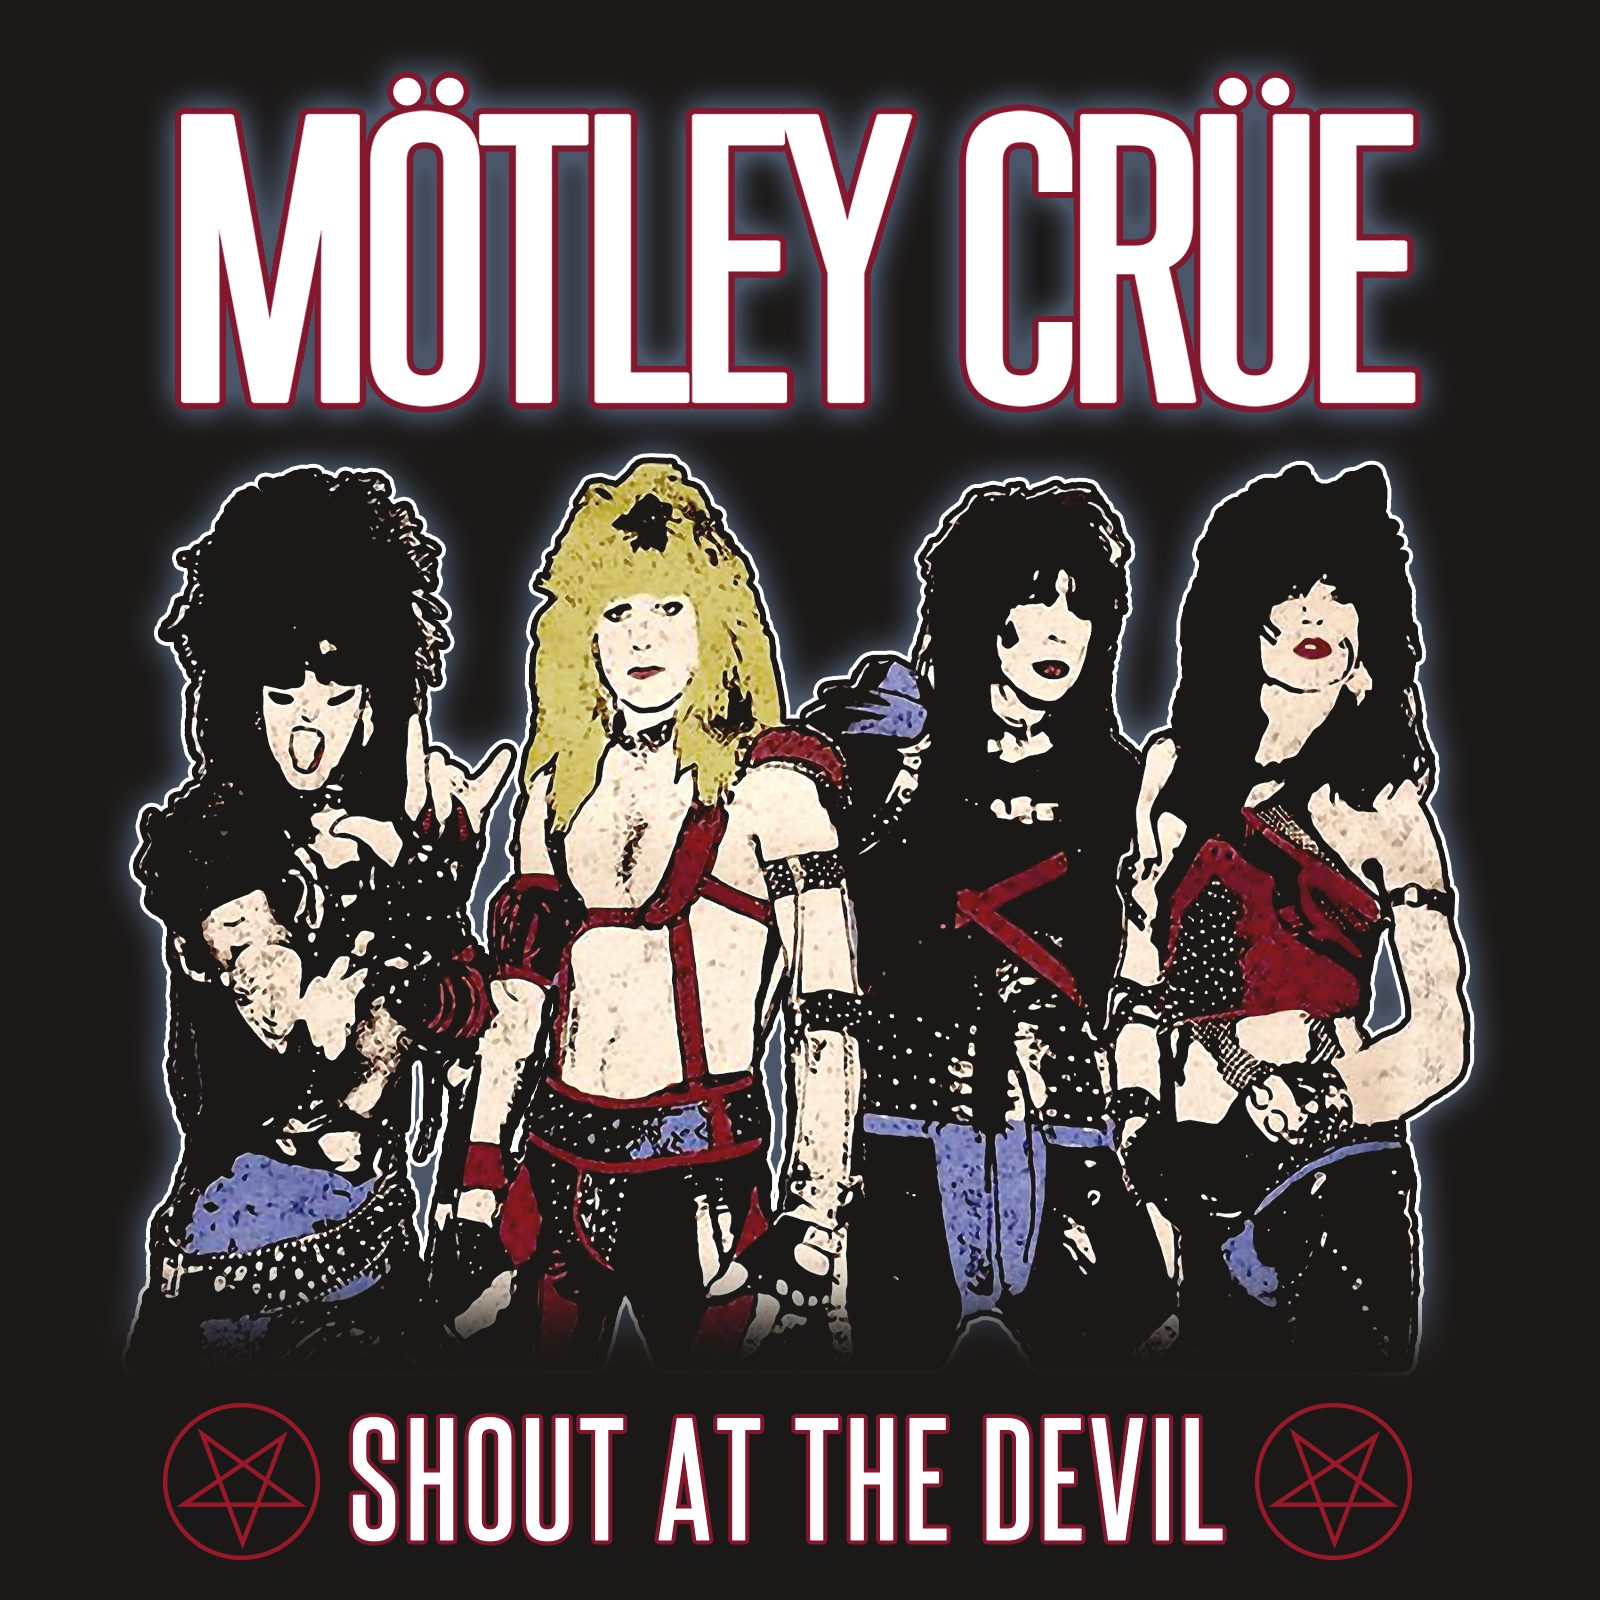 Motley Crue T-Shirt Retro 80's Motley Crue Shout at the Devil Pentagram Tee